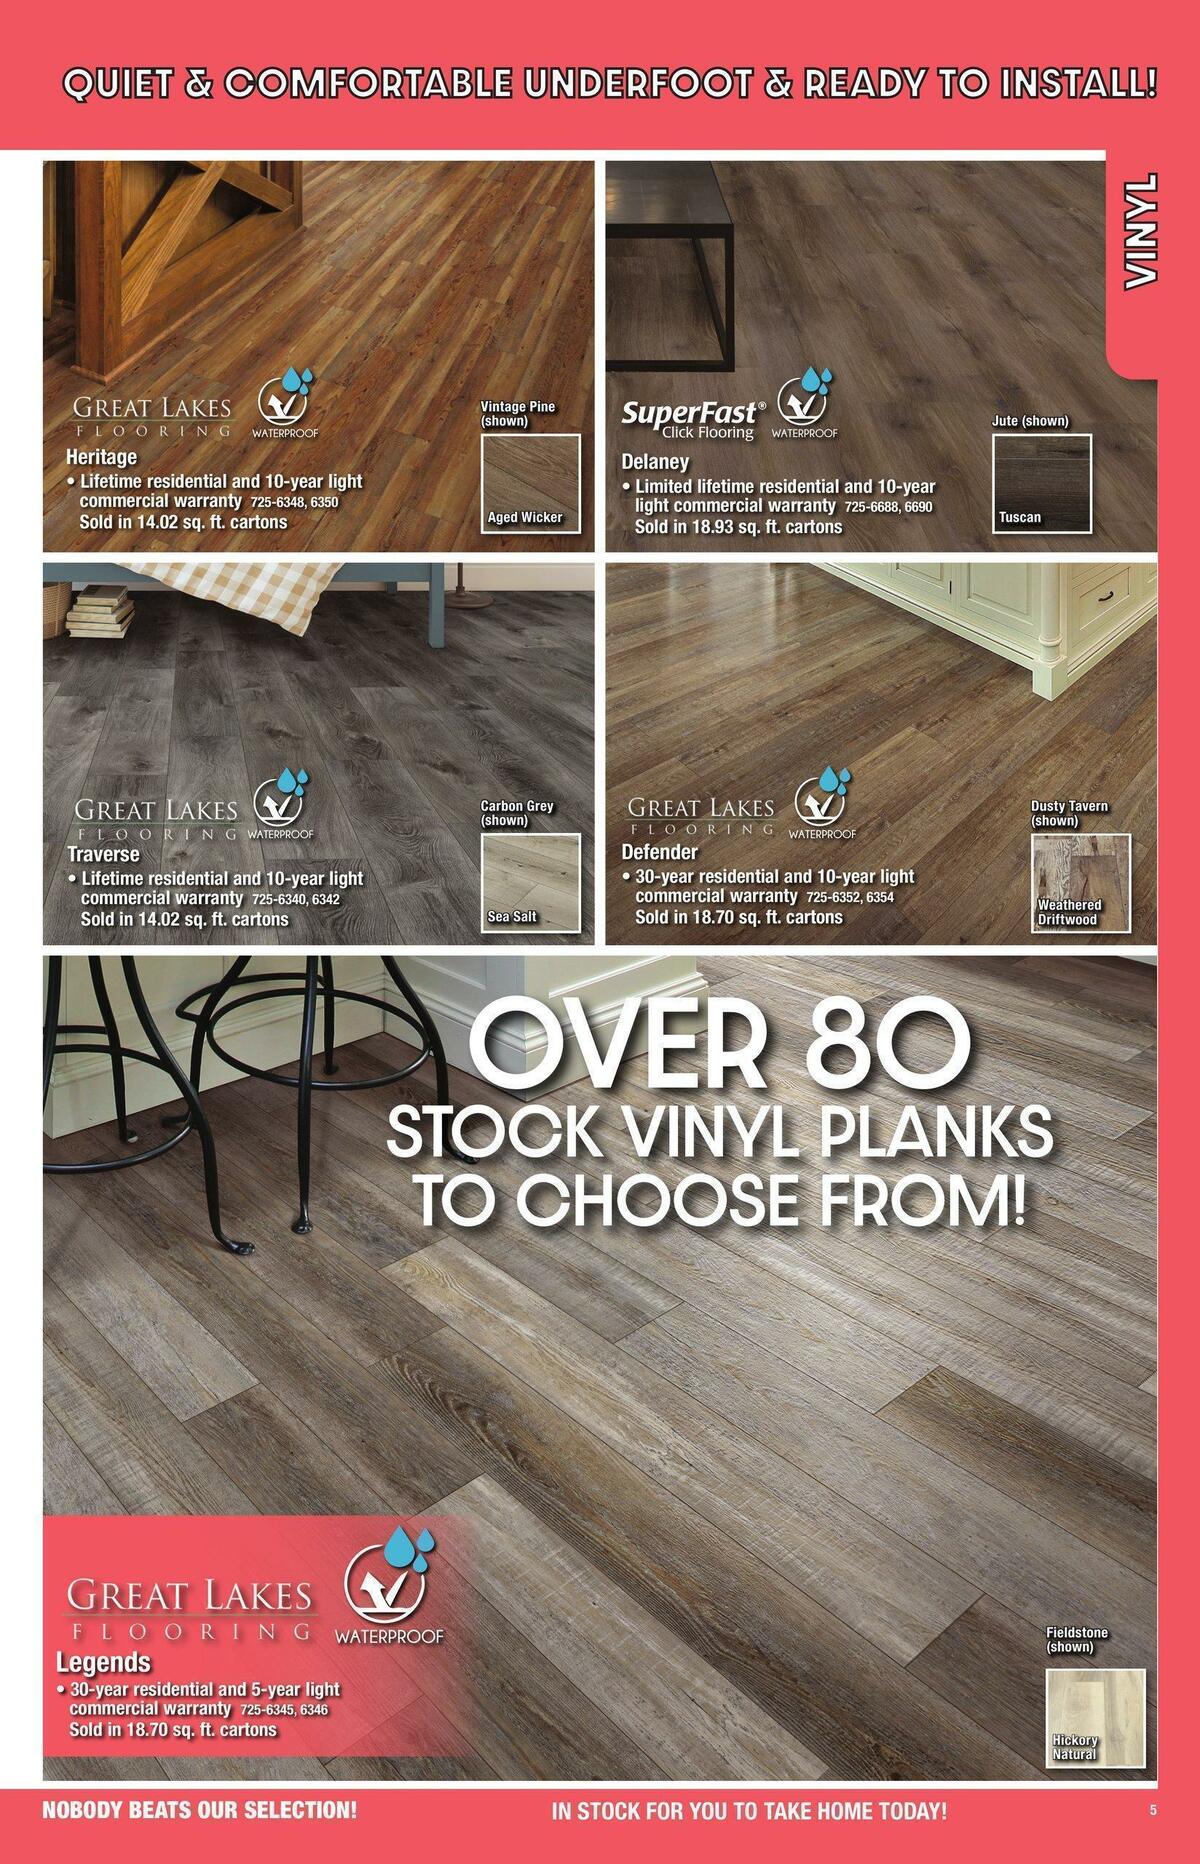 Menards Flooring Catalog Weekly Ad from November 1